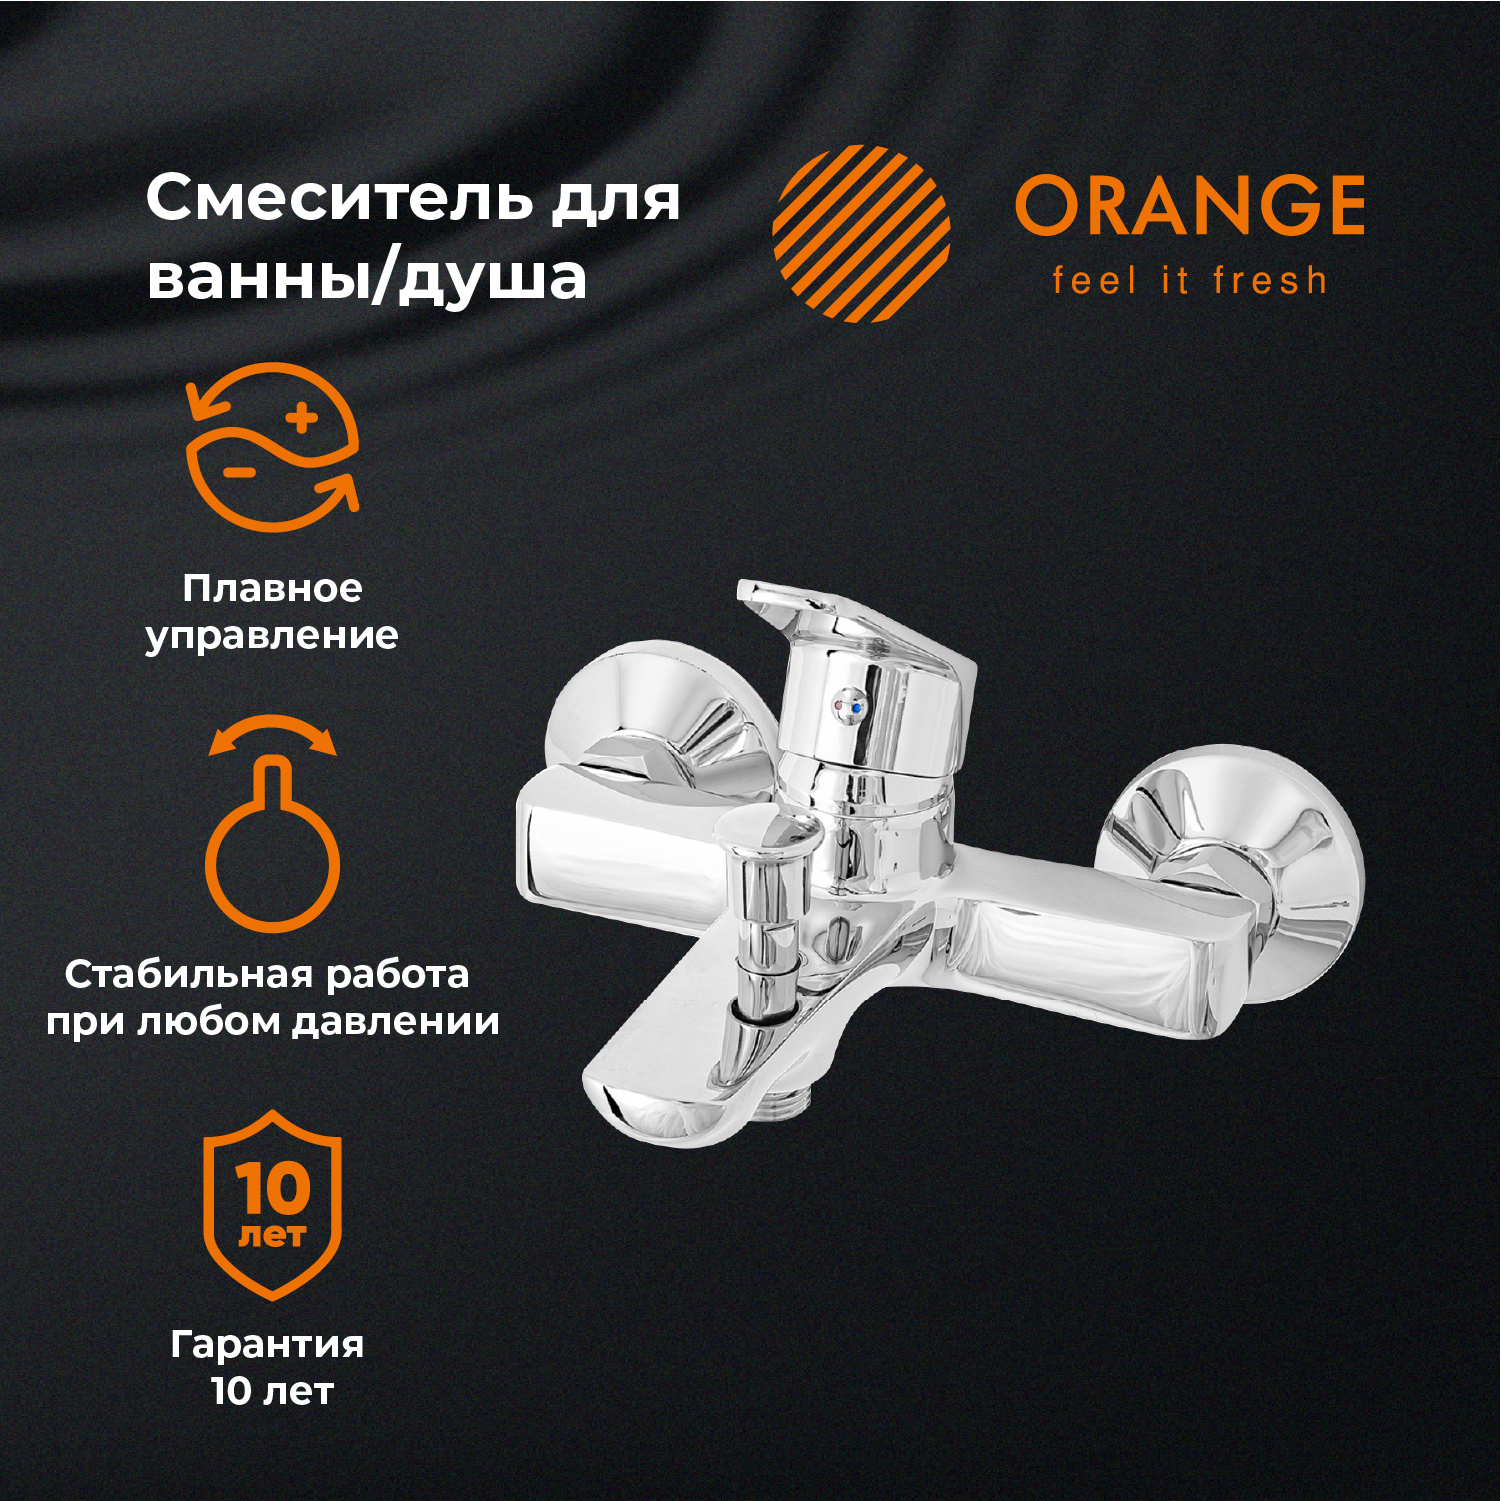 Смеситель для ванны и душа Orange FELIX M14-100cr цвет хром смеситель для ванны orange felix хром m14 100cr